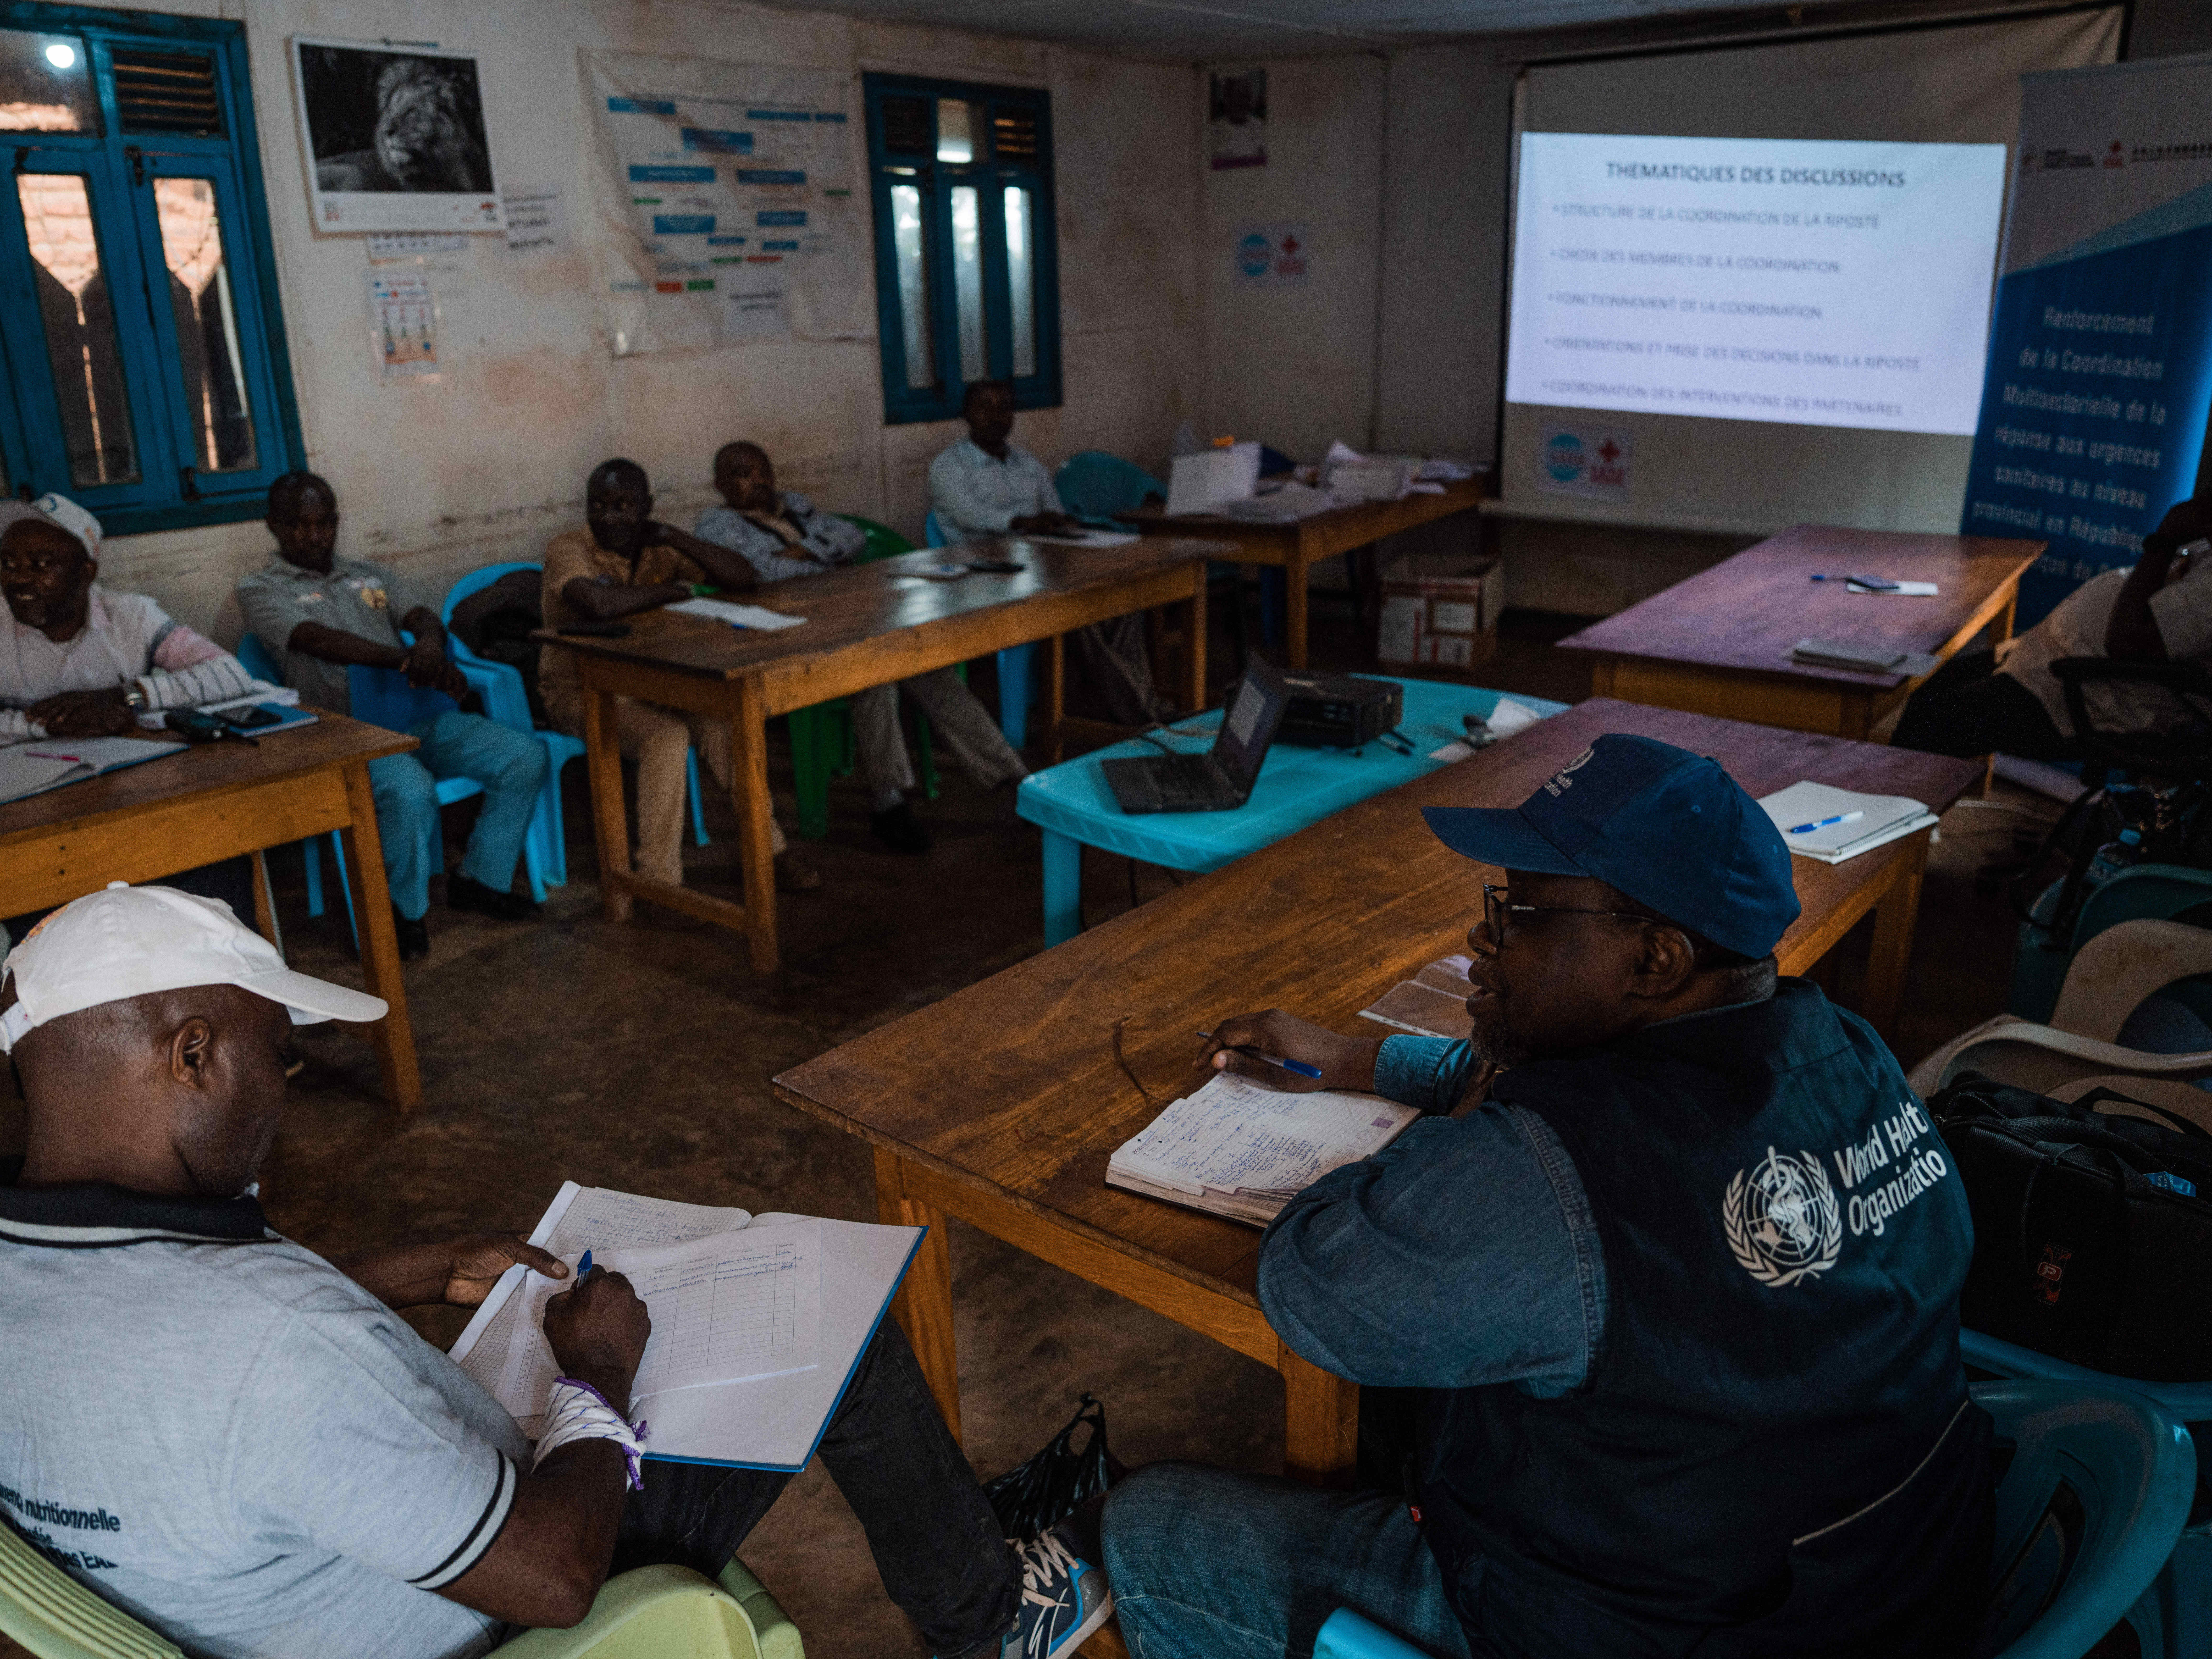 Les membres des différentes commission mises en place pour la riposte contre Ebola posent dans l’enceinte du Bureau central de la zone de santé (BCZ) de Beni, en présence de l’équipe de l’OMS. Les épidémies majeures qui ont touché la région ont souvent été cordonnées à partir de ce BCZ. OMS/Hugh Cunningham Kinsella  